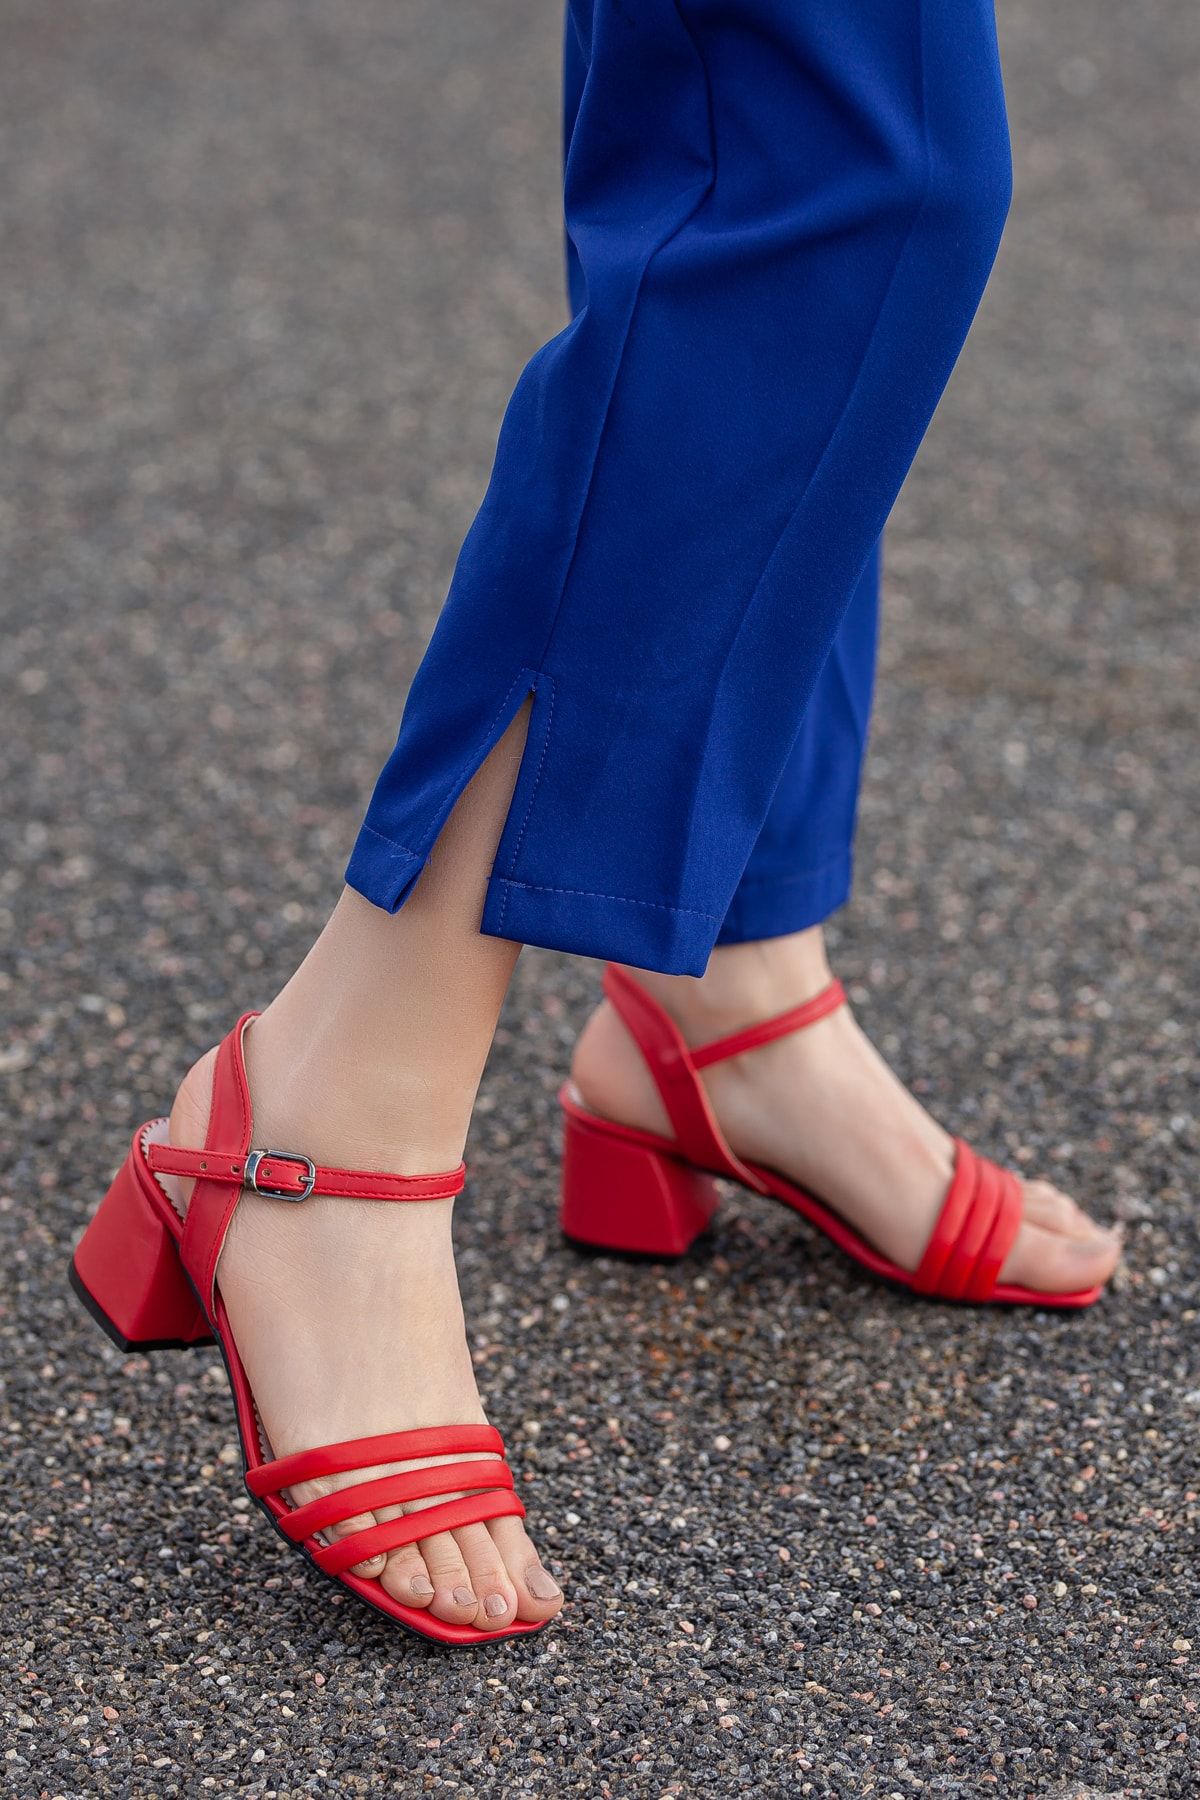 Daxtors Kadın Kırmızı Klasik Topuklu Ayakkabı D2180